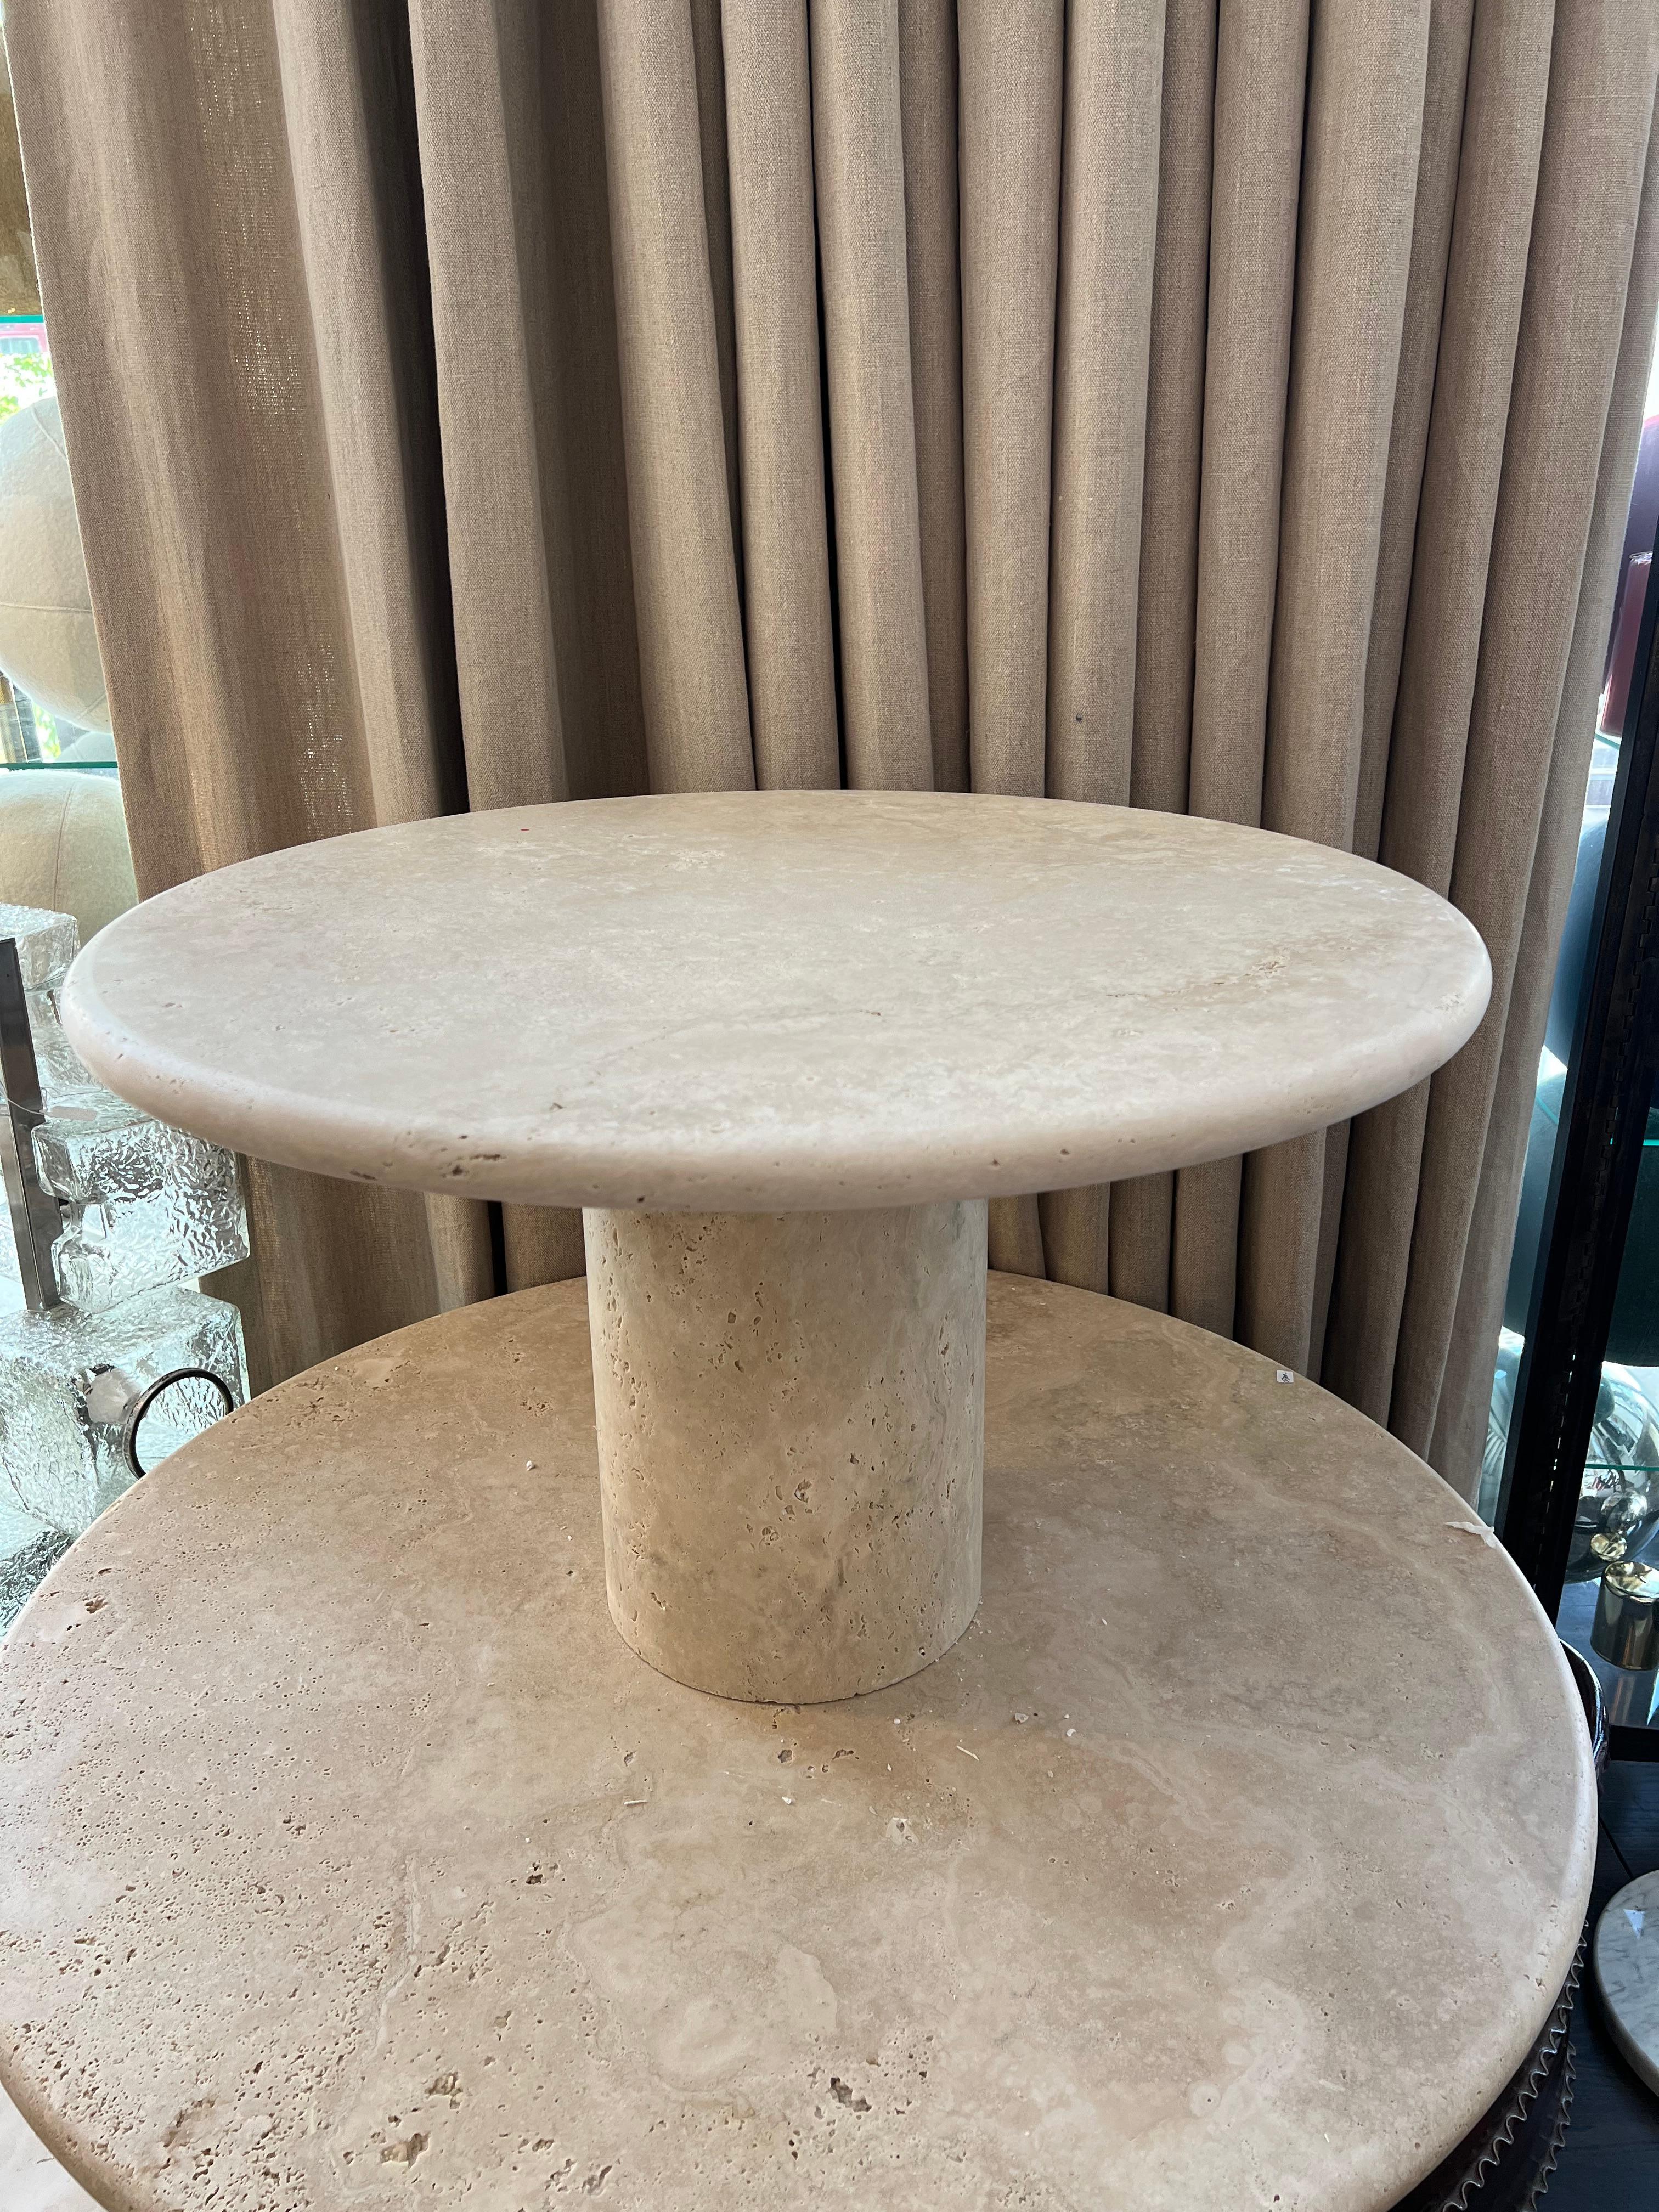 Table basse ronde en travertin romain conçue par Le Lampade
Disponible dès maintenant. Cette table peut être totalement personnalisée. 
Fabriqué à la main en Italie avec du travertin italien.